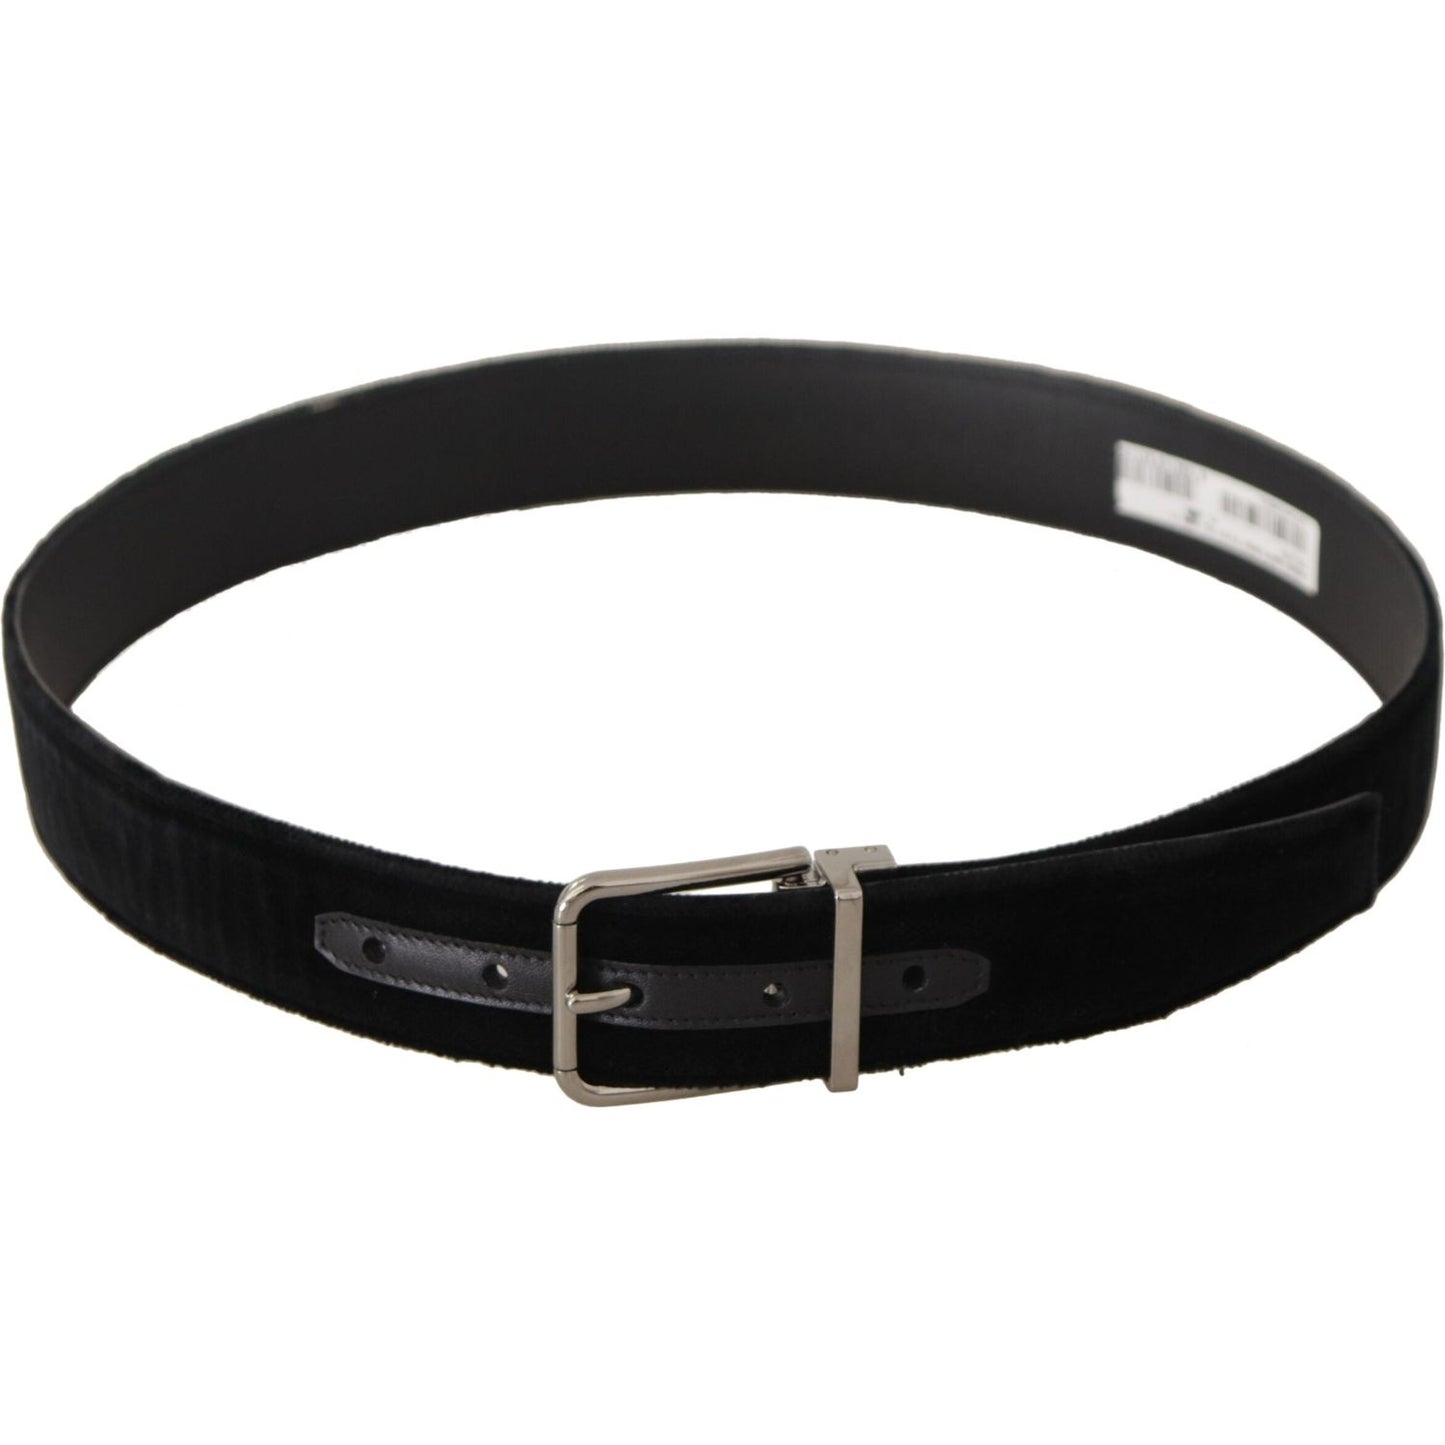 Dolce & Gabbana Sophisticated Velvet Leather Belt black-velvet-silver-logo-engraved-metal-buckle-belt IMG_0543-scaled-13a7e5dd-a10.jpg